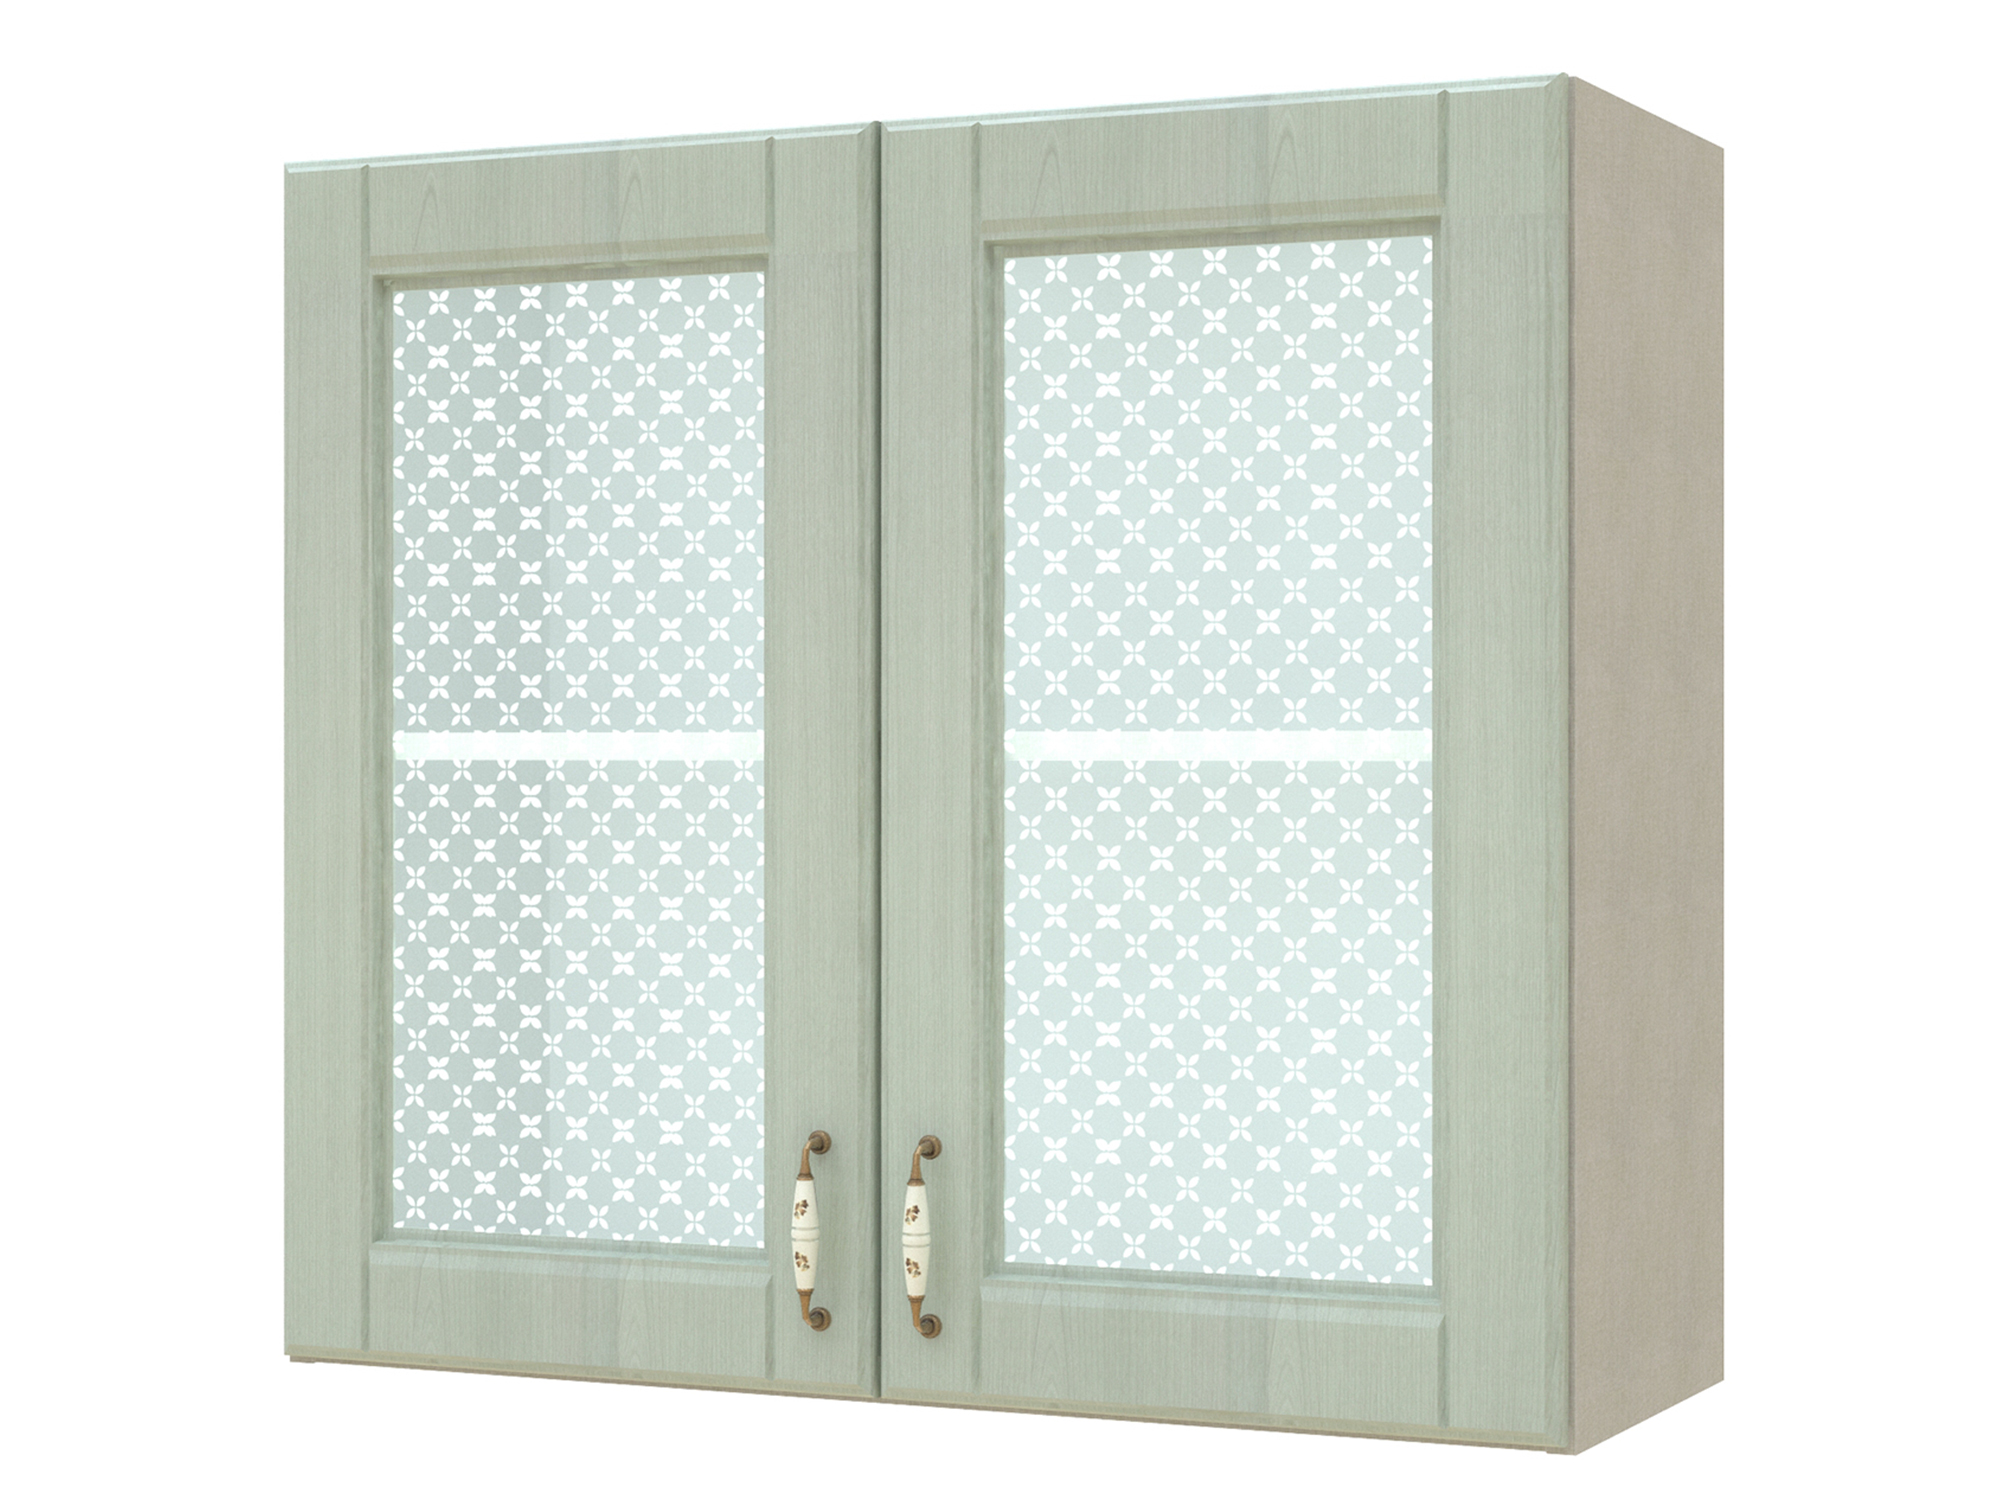 Шкаф-витрина двухдверный Изабелла 80 см Ясень зеленый, Бежевый, МДФ, Пленка ПВХ, КДСП